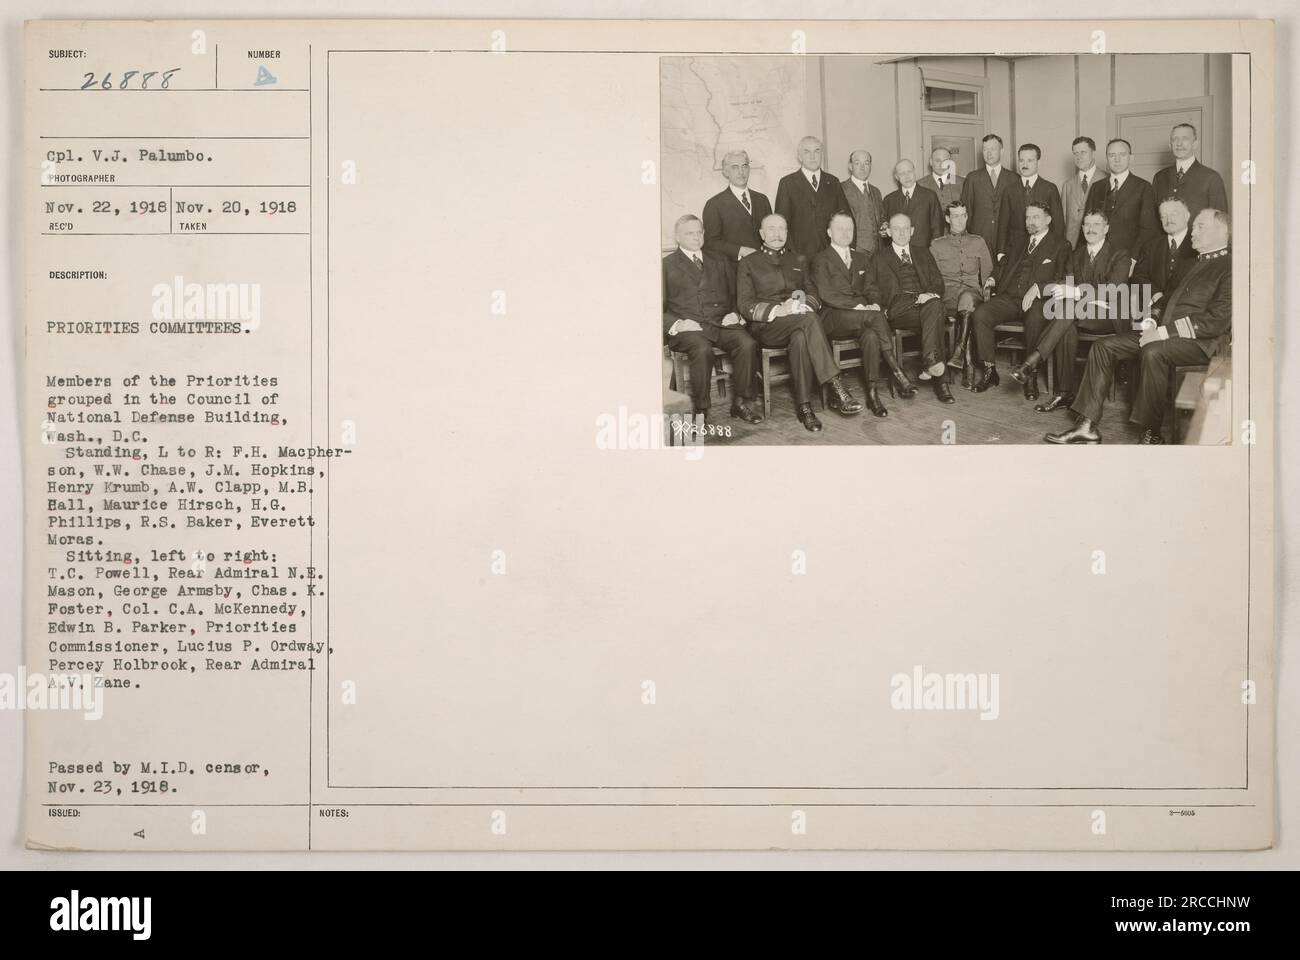 Membri dei comitati priorità raggruppati nel Council of National Defense Building a Washington, D.C. il 22 novembre 1918. In piedi, da sinistra a destra: F.H. MacPherson, W.W. Chase, J.M. Hopkins, Henry Krumb, A.W. Clapp, M.B.. Hall, Maurice Hirsch, H.G. Phillips, R.S. Baker, Everett Moras. Seduta, da sinistra a destra: T.C. Powell, contrammiraglio N.E. Mason, George Armsby, Cass. K. Foster, col. C.A. McKennedy, Edwin B. Parker, Commissario per le priorità, Lucius P. Ordway, Percy Holbrook, Contrammiraglio A.V. Zane. Foto Stock